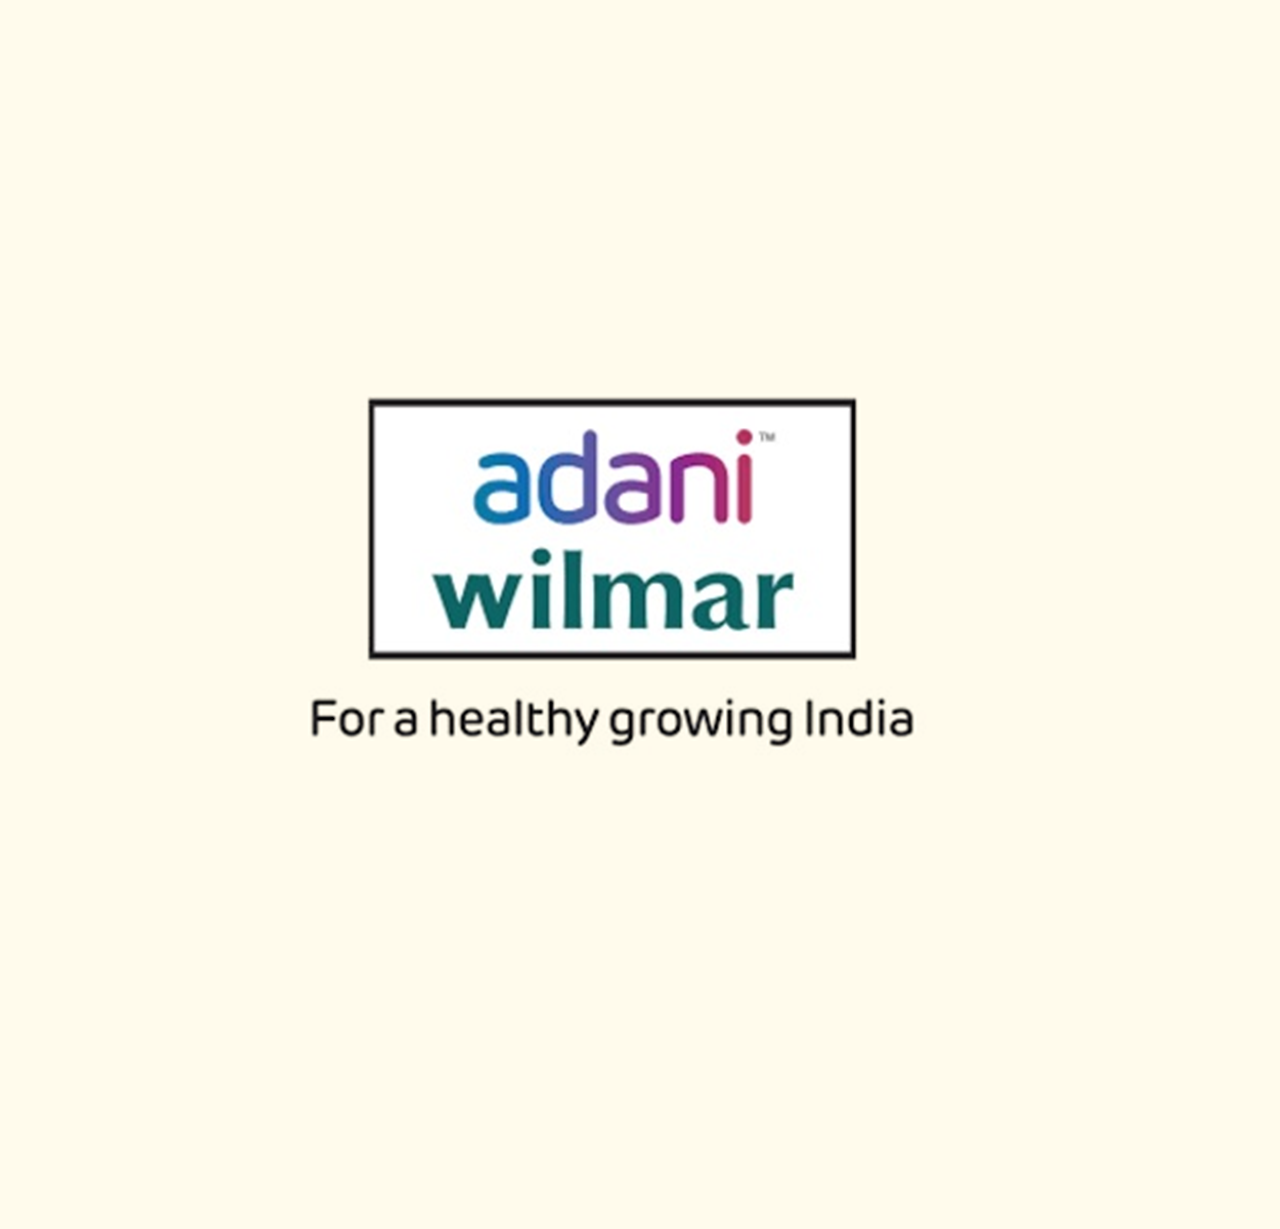 Adani Wilmar buys several brands, including 'Kohinoor' to strengthen food  biz | Business